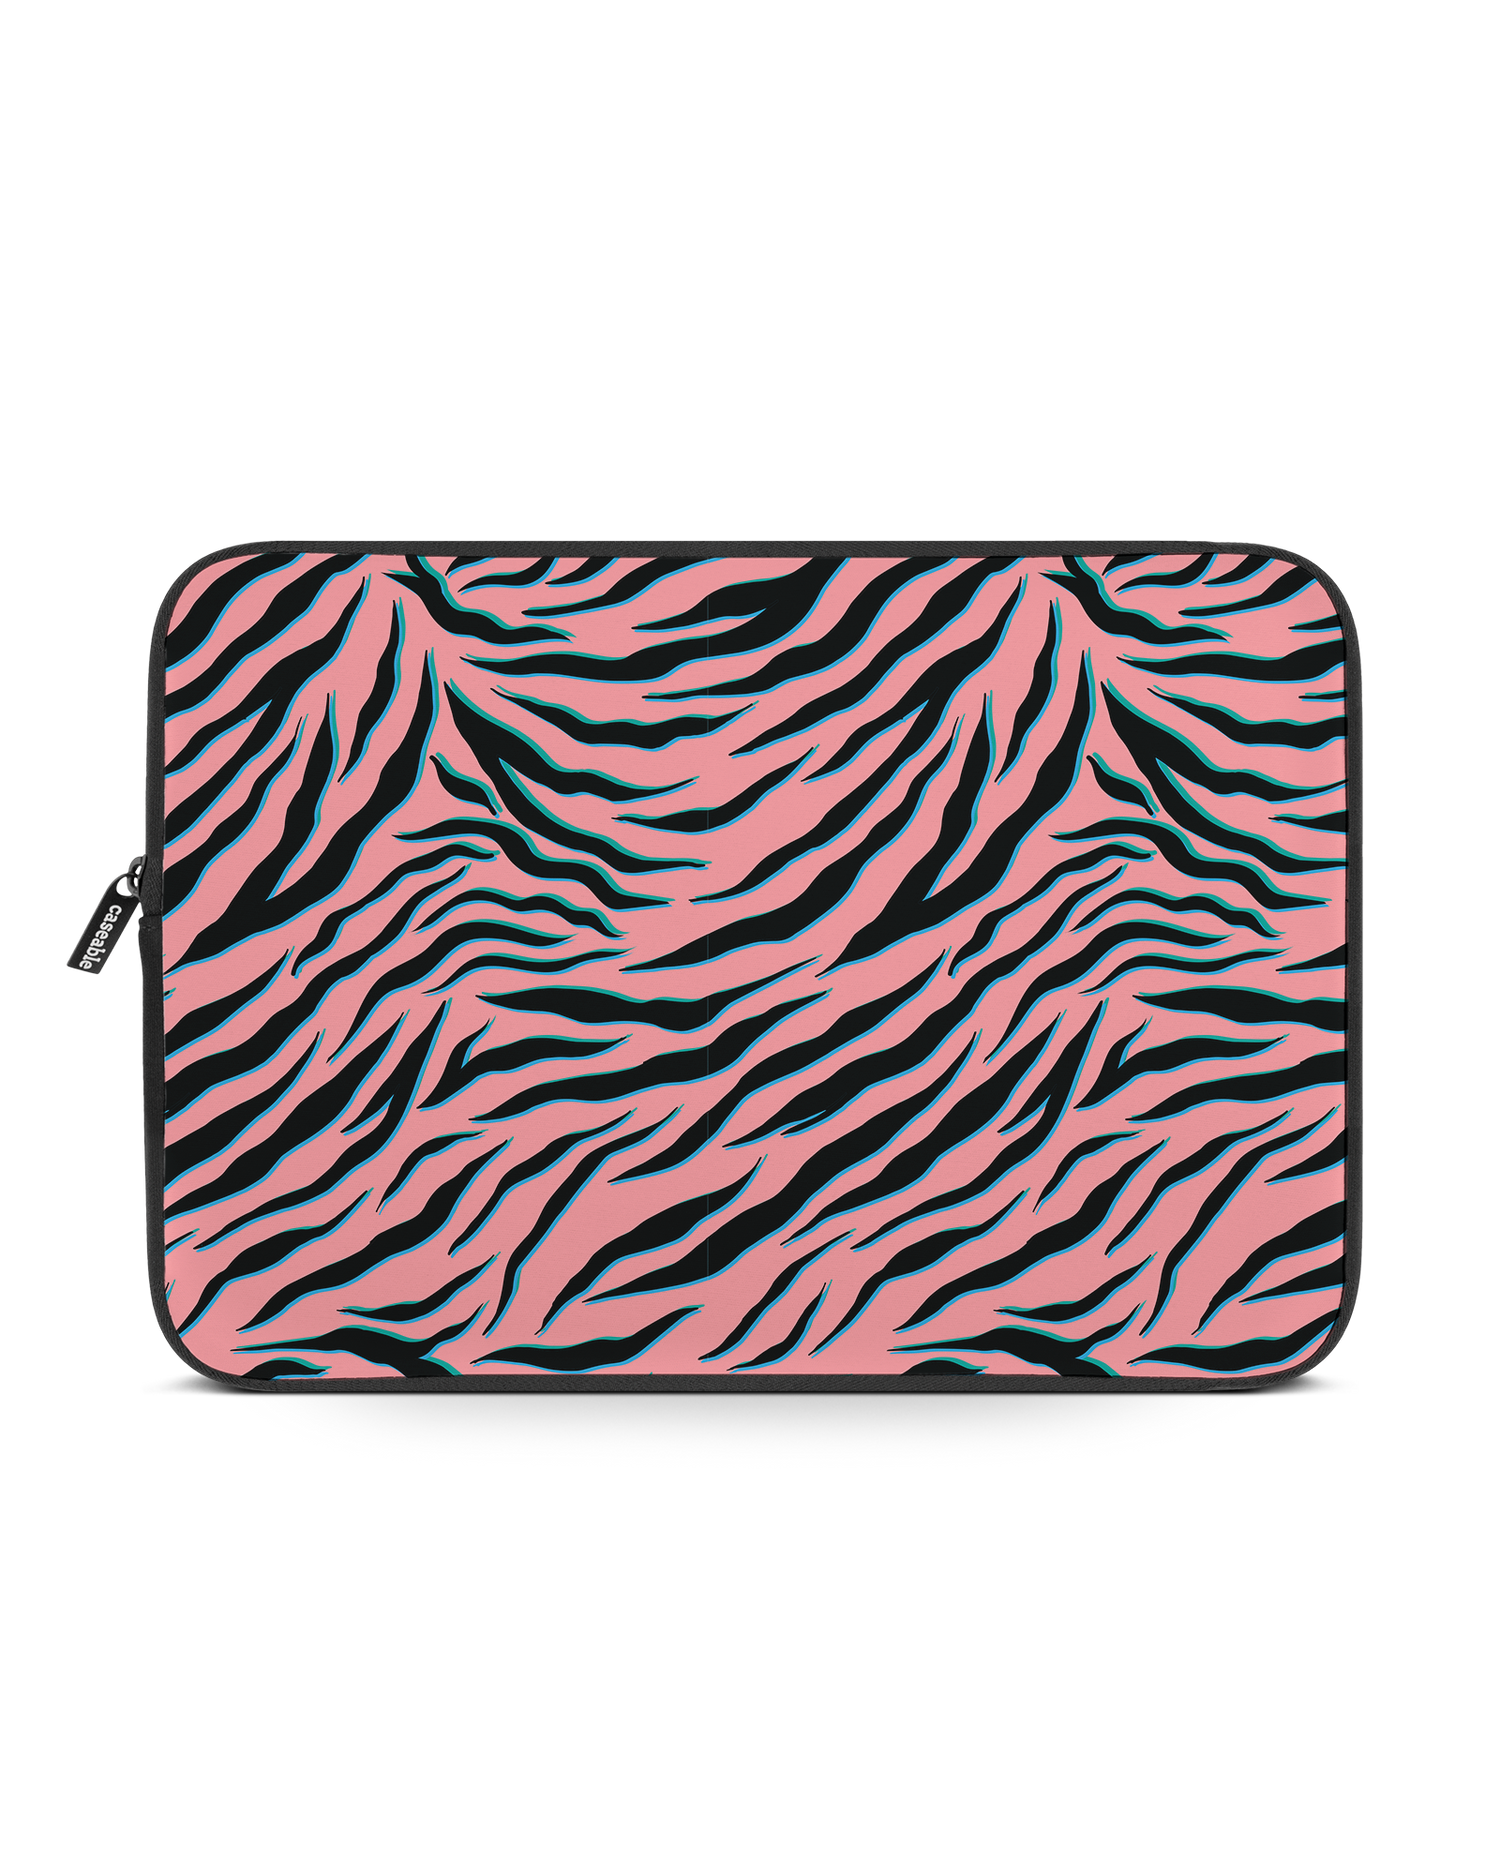 Pink Zebra Laptophülle 15-16 Zoll: Vorderansicht